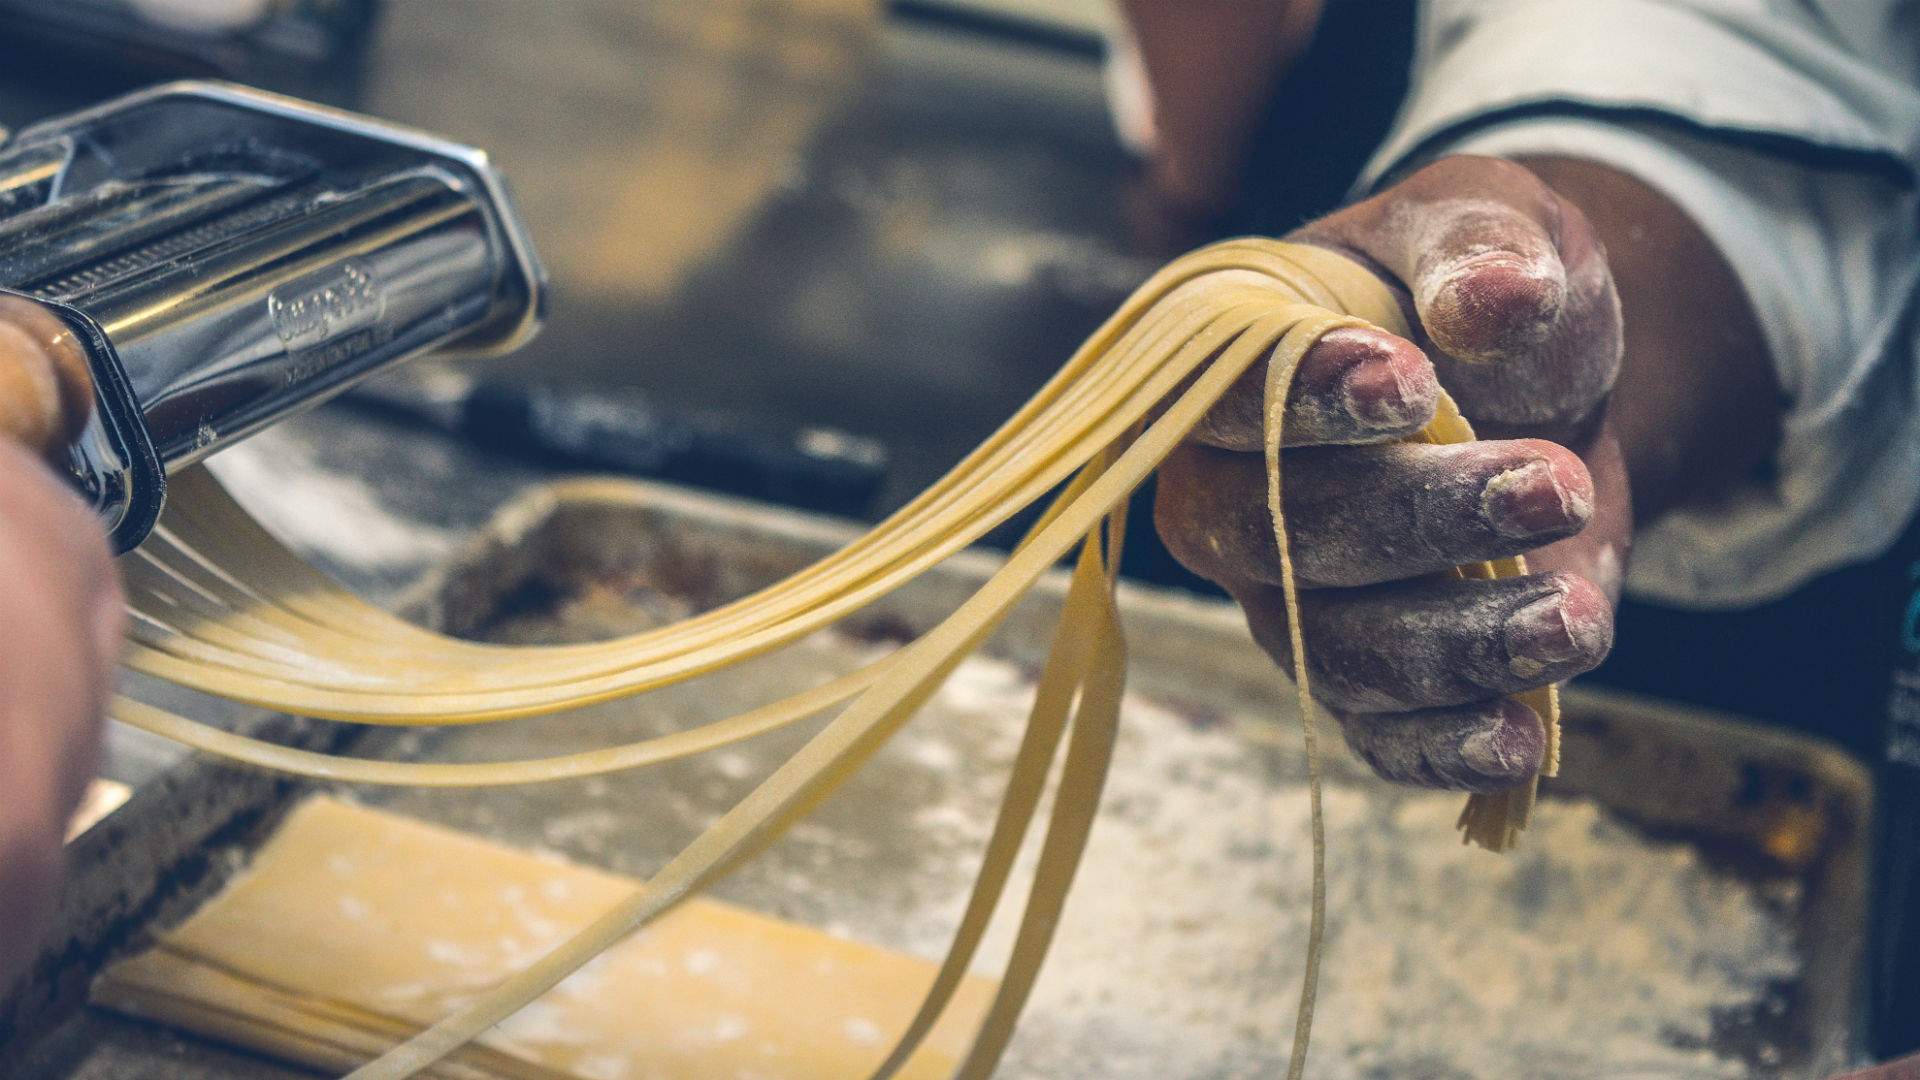 Butta La Pasta – The De Cecco Artisan Pasta Banquet